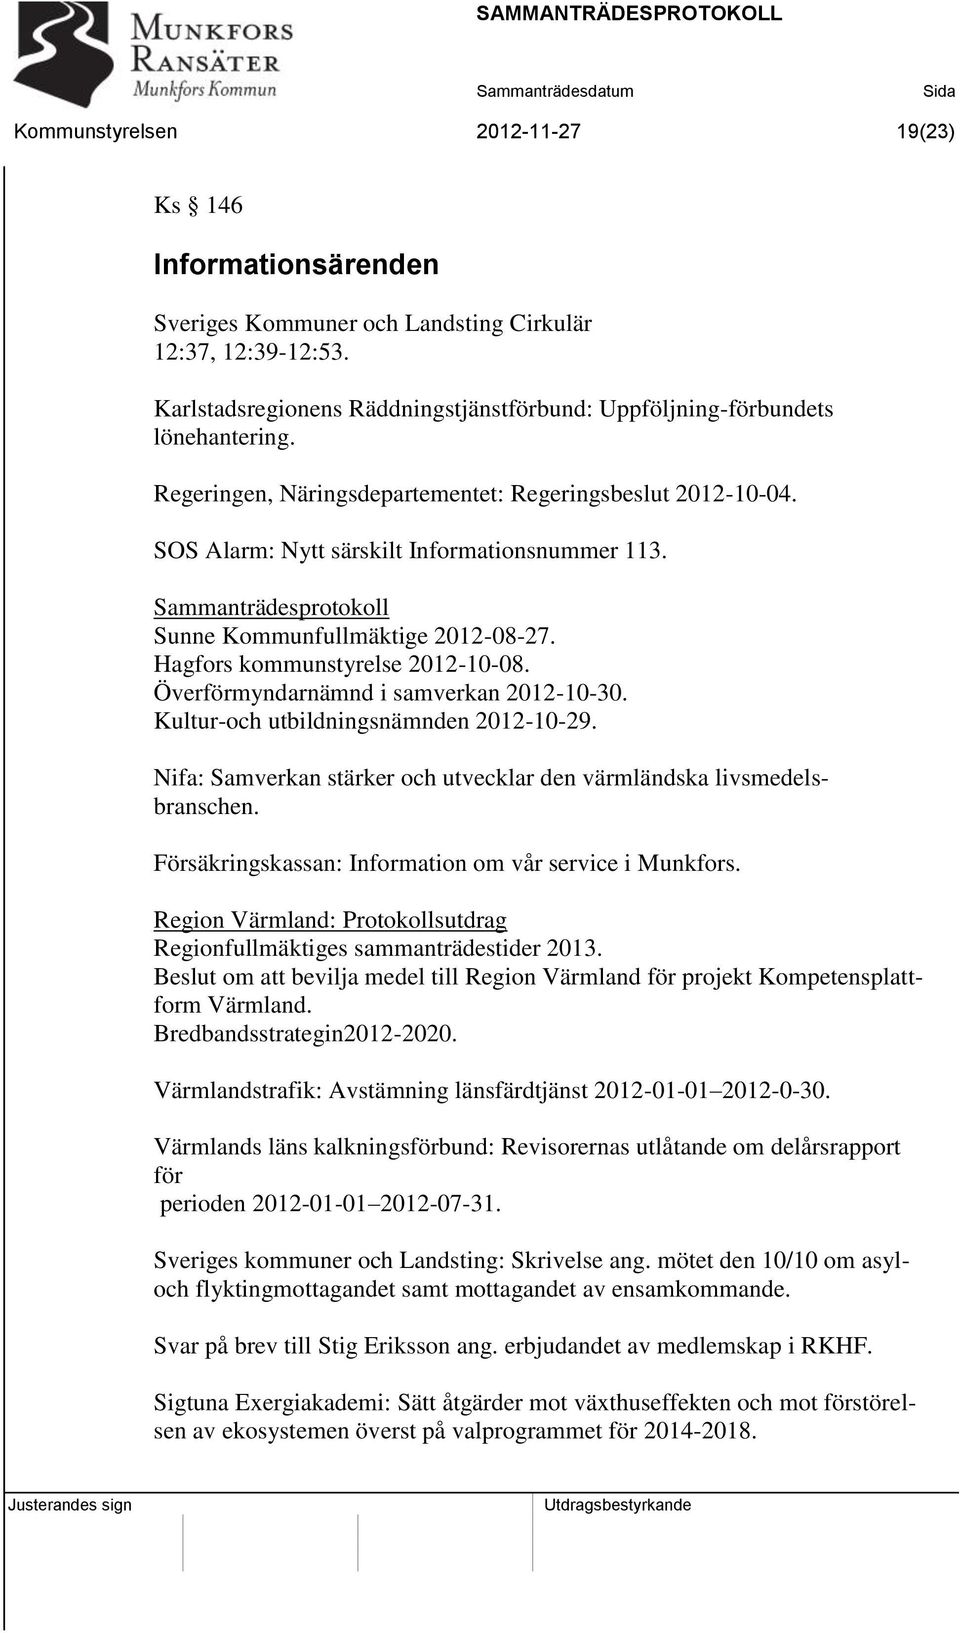 Sammanträdesprotokoll Sunne Kommunfullmäktige 2012-08-27. Hagfors kommunstyrelse 2012-10-08. Överförmyndarnämnd i samverkan 2012-10-30. Kultur-och utbildningsnämnden 2012-10-29.